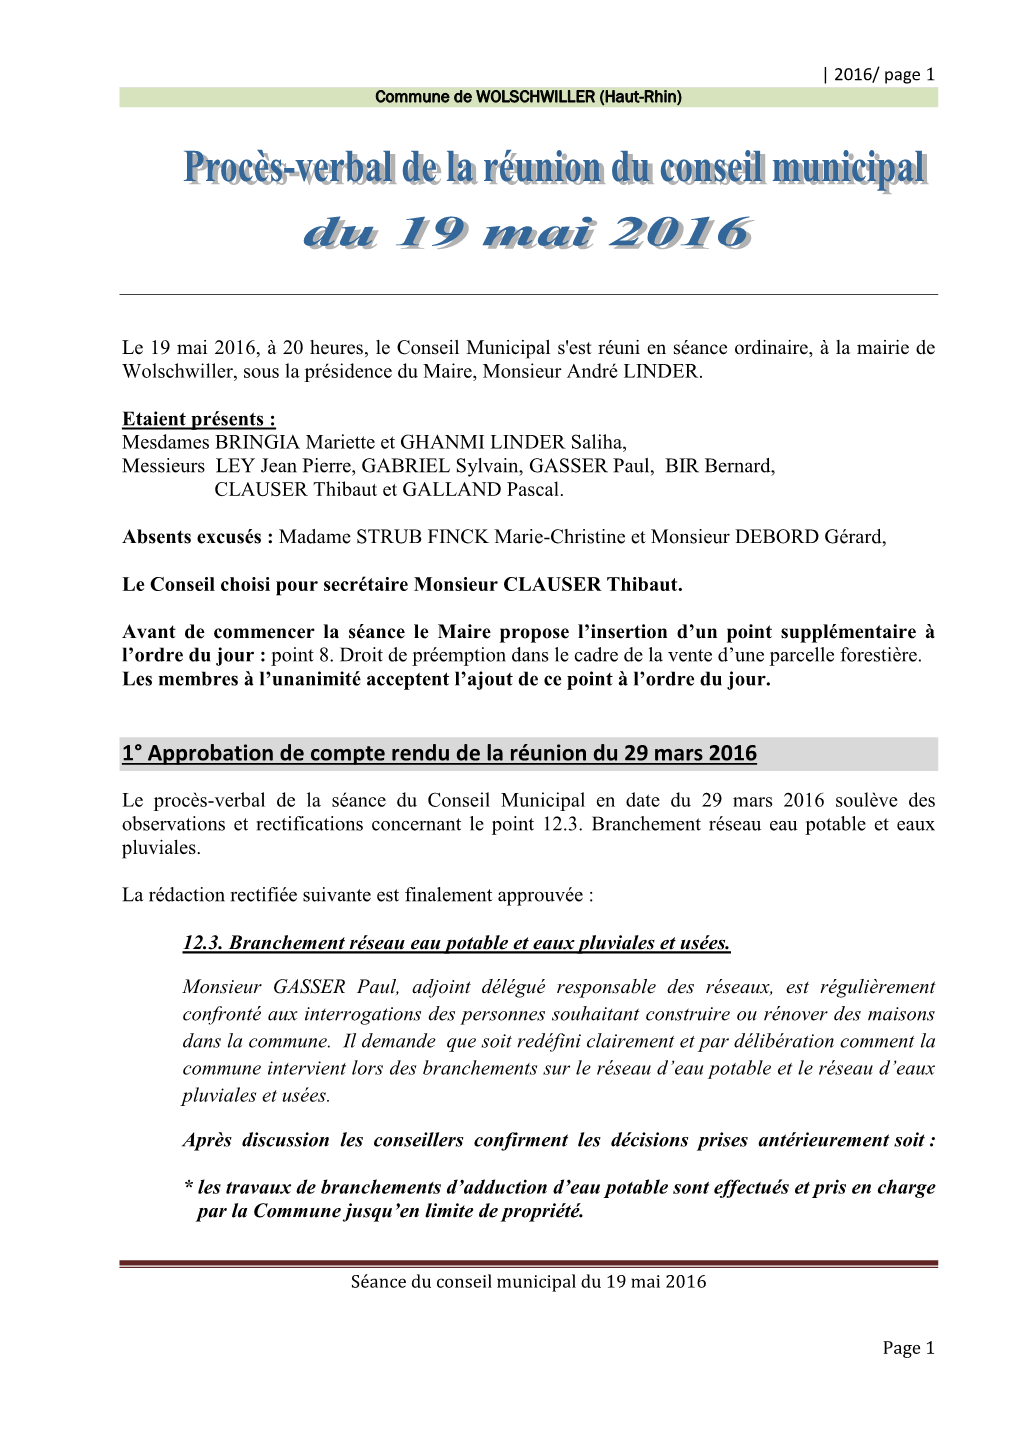 1° Approbation De Compte Rendu De La Réunion Du 29 Mars 2016